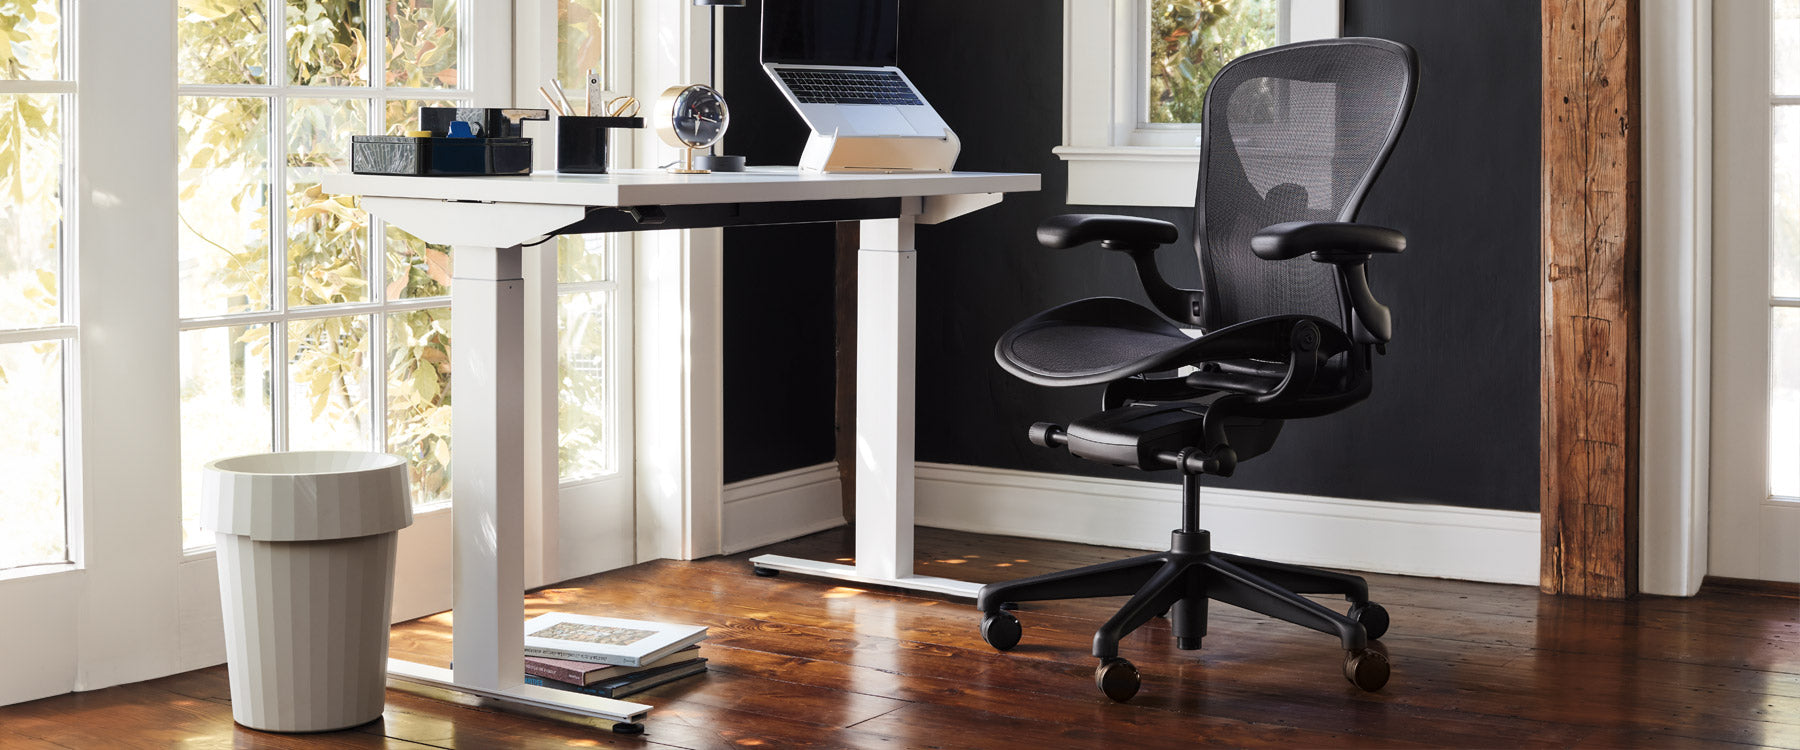 Ein Home-Office-Setup mit einem HAY Shade Bin, einem Herman Miller Nevi Stehpult und einem schwarzen Aeron Chair in Onyx